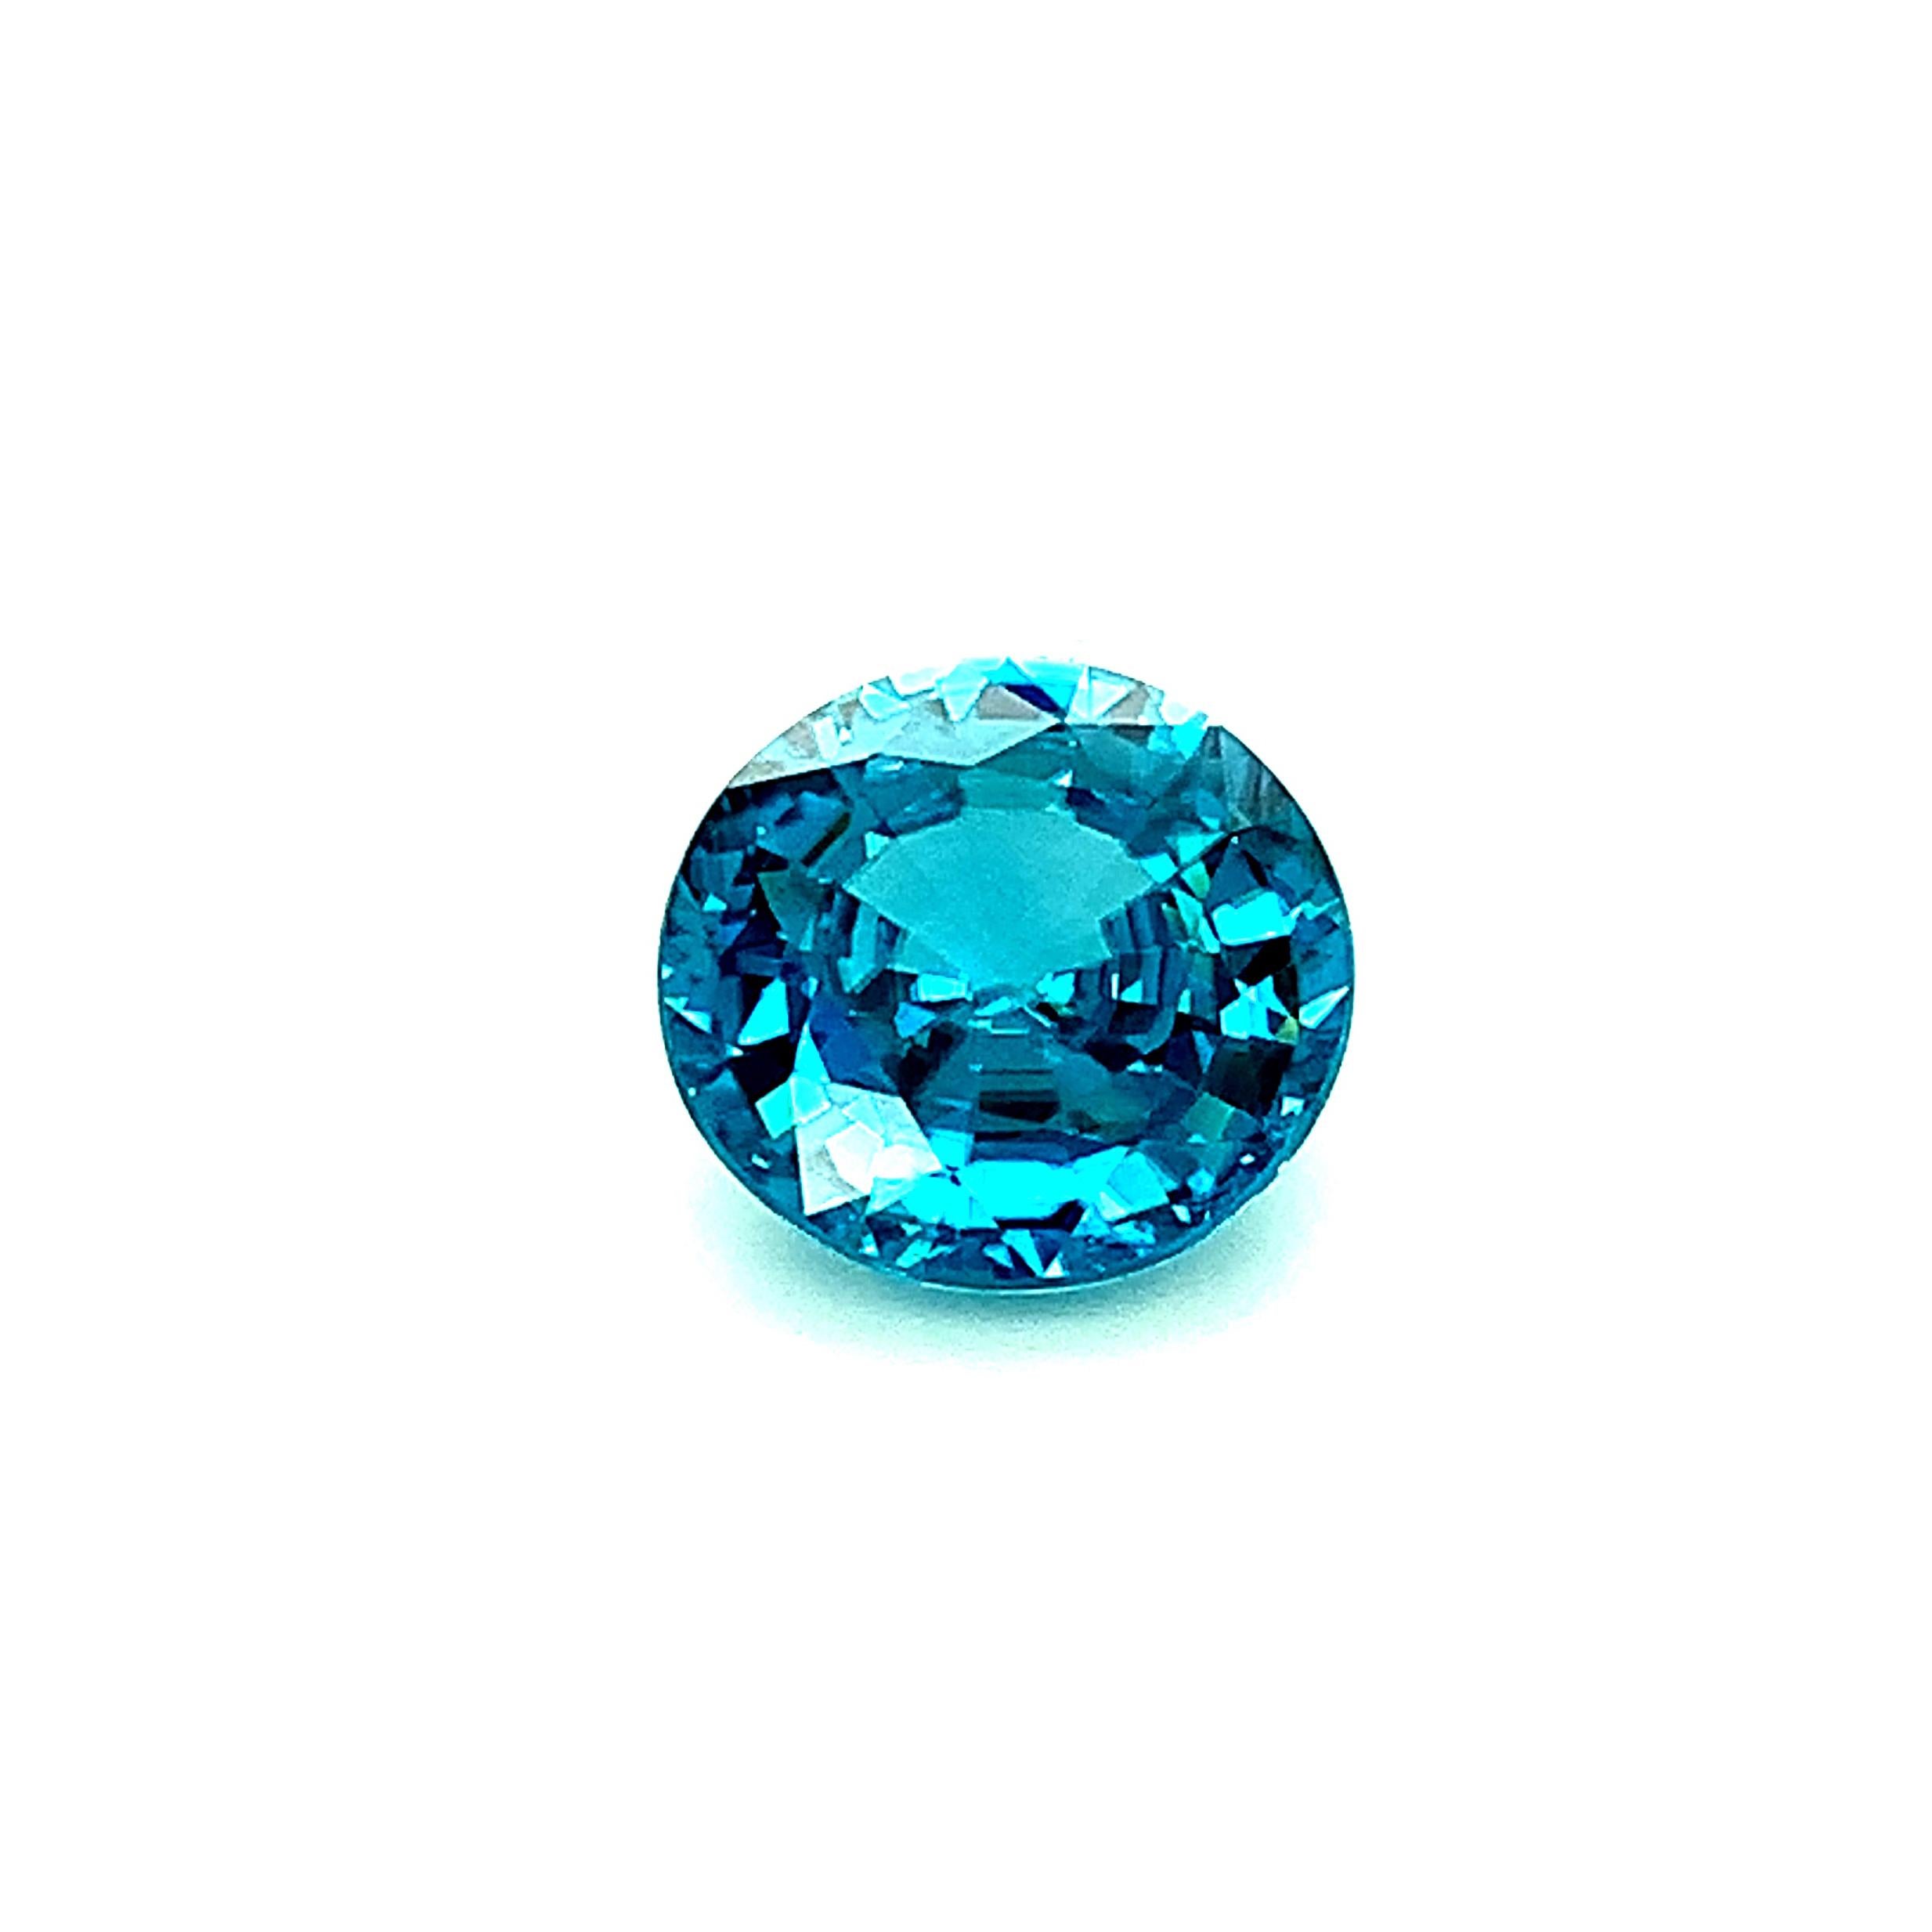 10.18 Carat Round Blue Zircon, Unset Loose Gemstone   For Sale 2